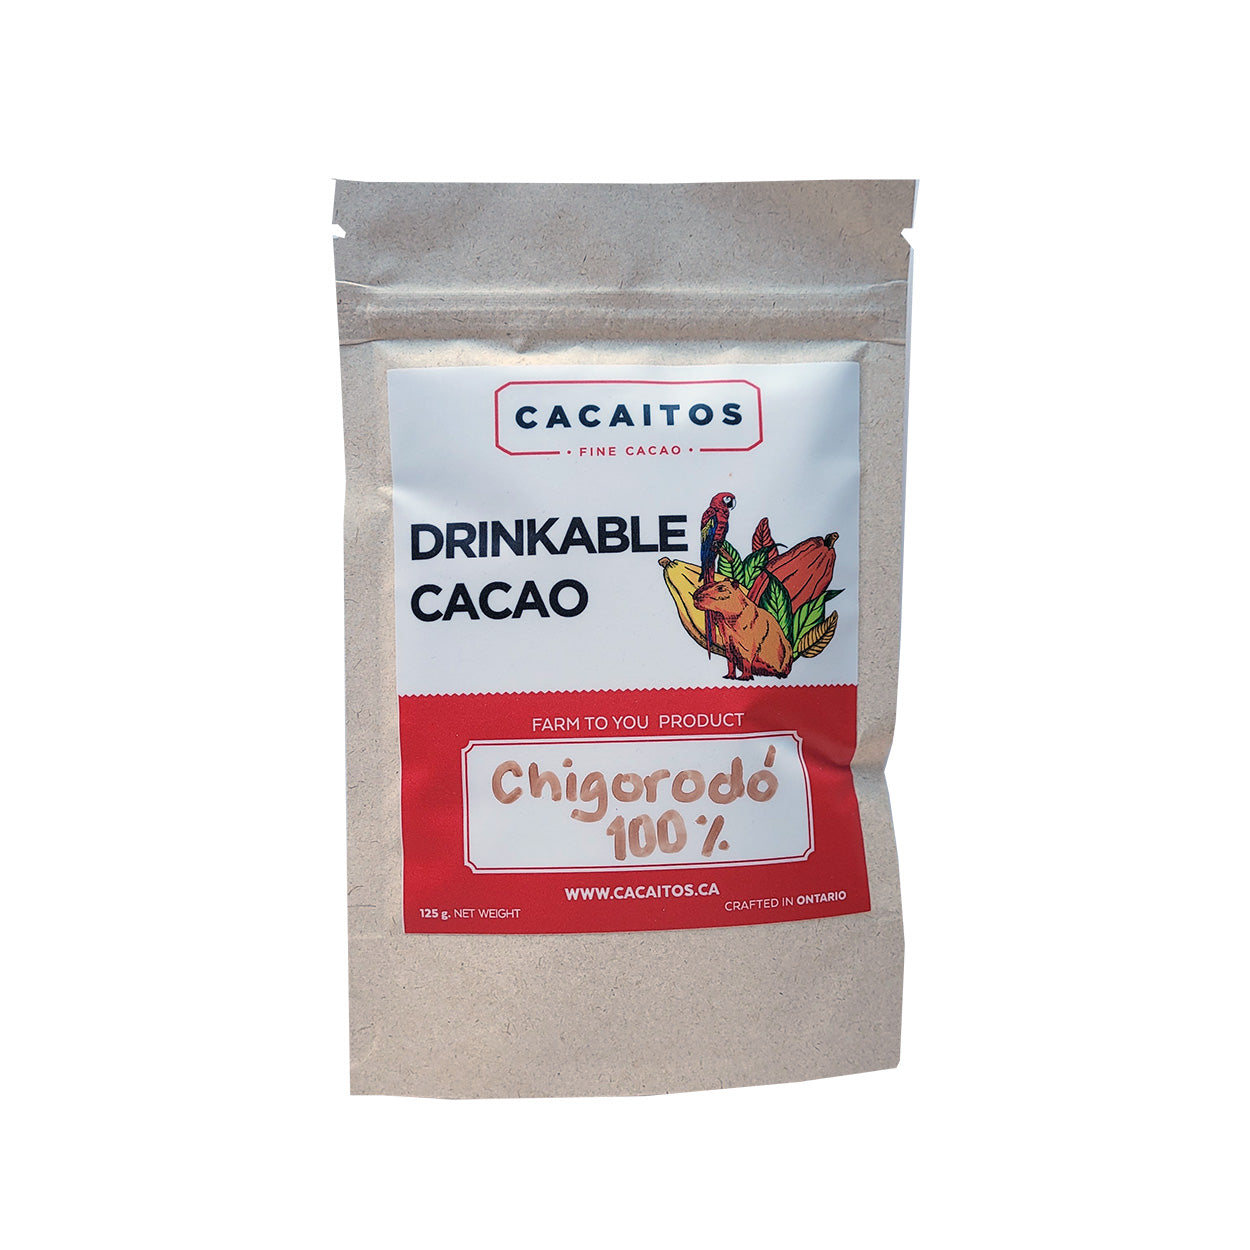 Cacaitos Drinkable Cacao 100% - Chigorodo